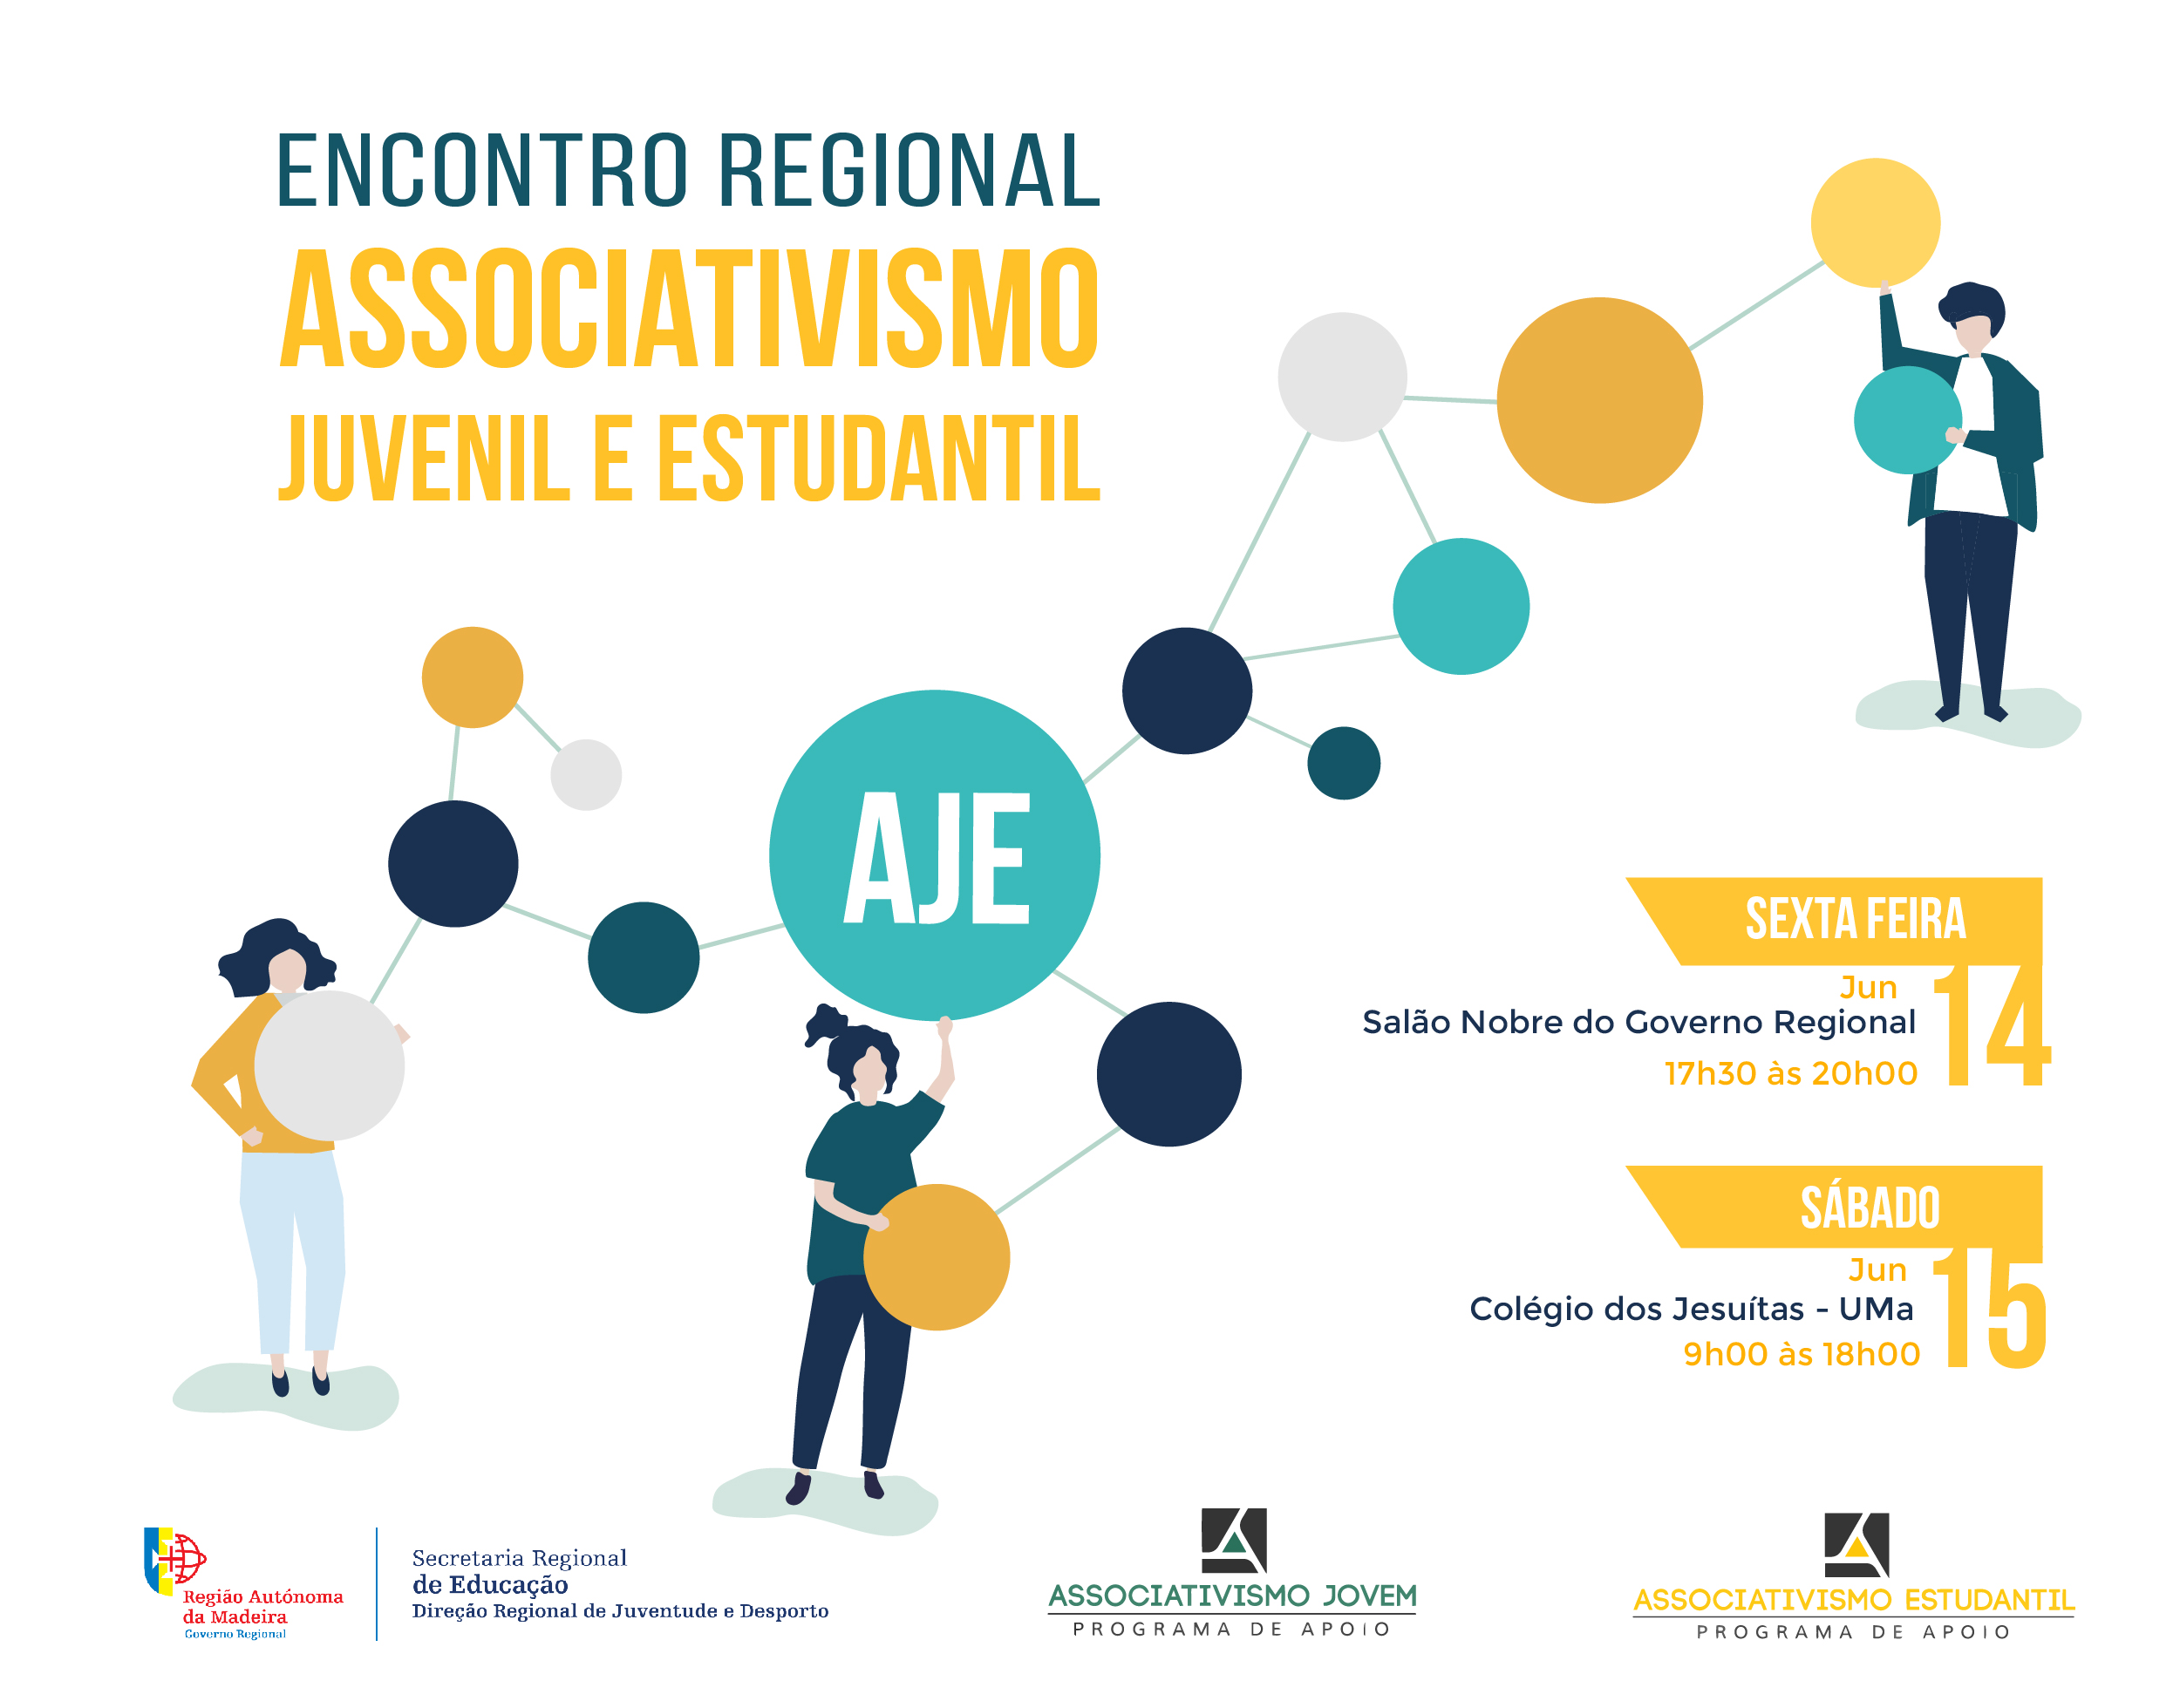  Encontro Regional do Associativismo Juvenil e Estudantil – AJE